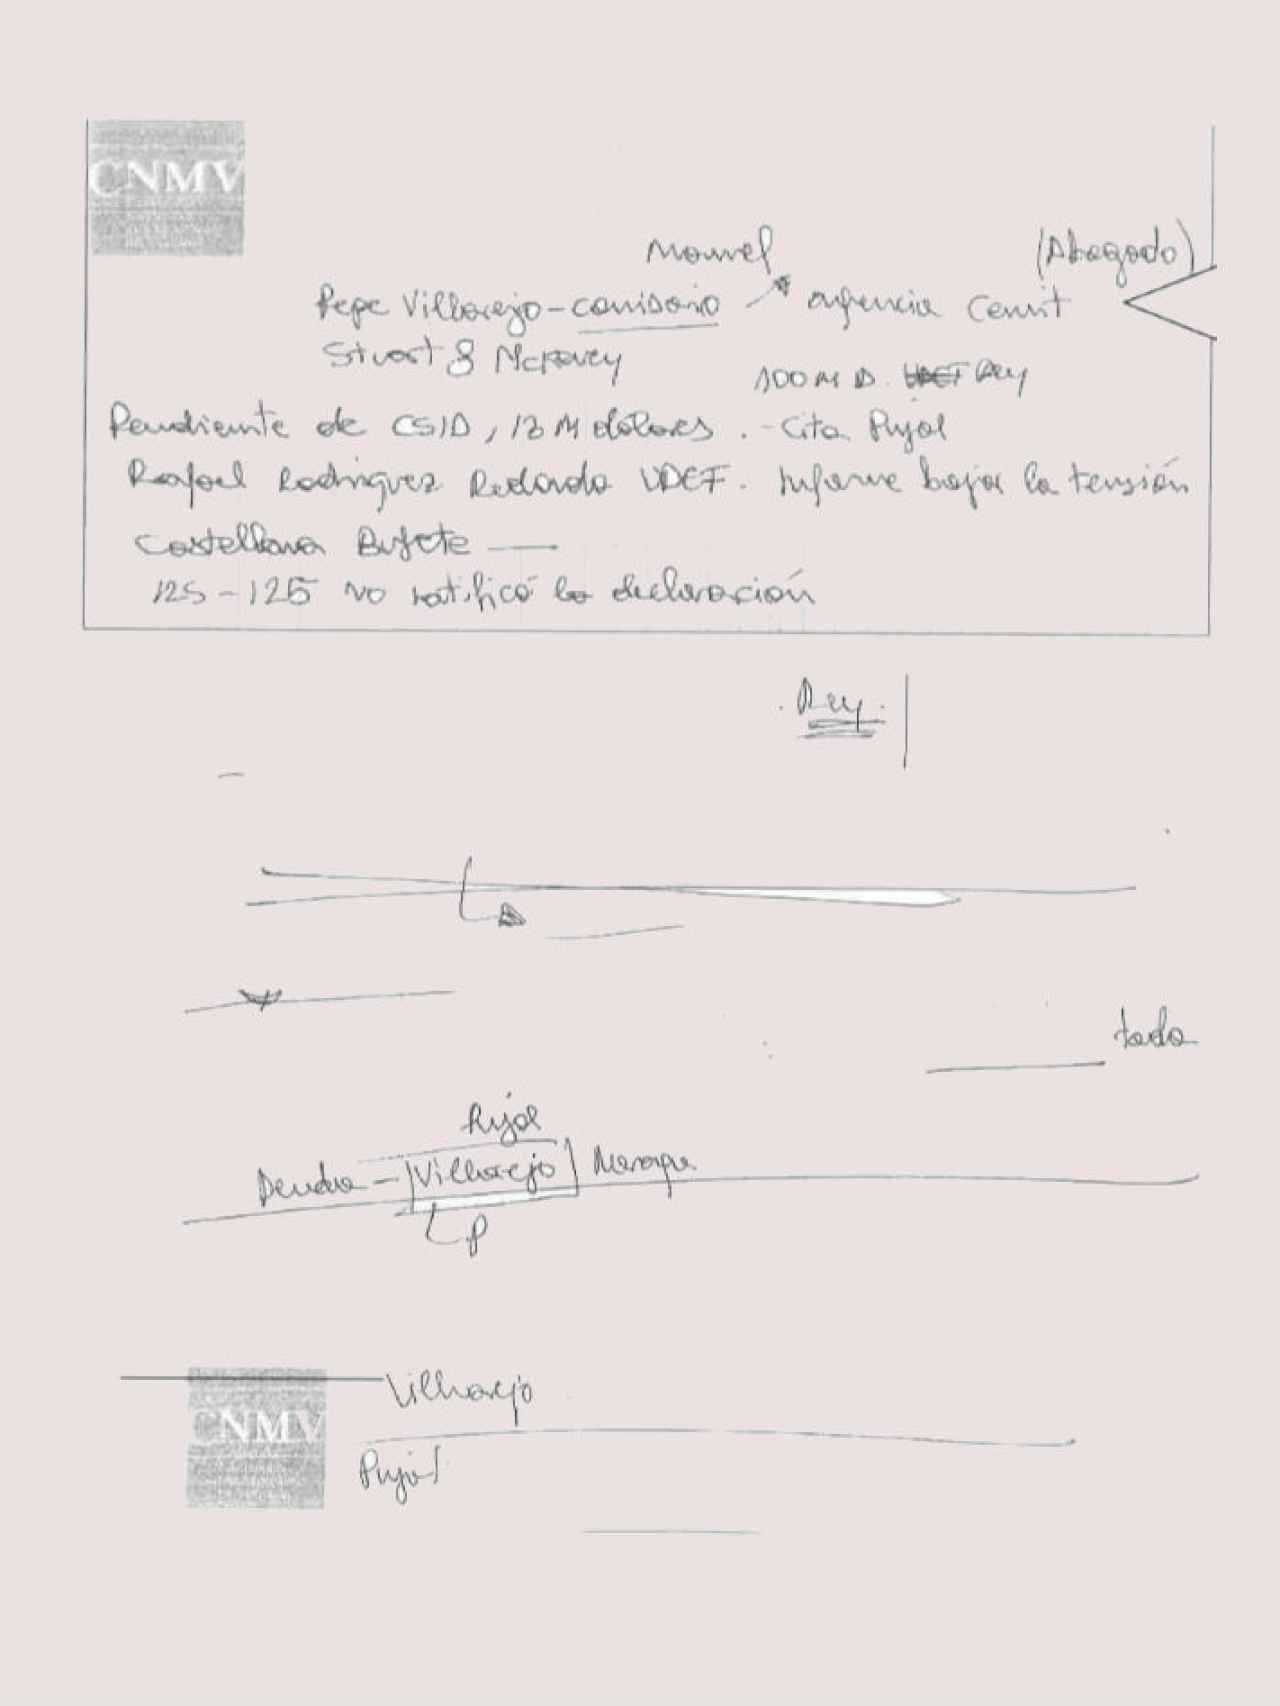 Documento encontrado en el domicilio de Francisco Nicolás Gómez Iglesias durante el registro de la Policía.